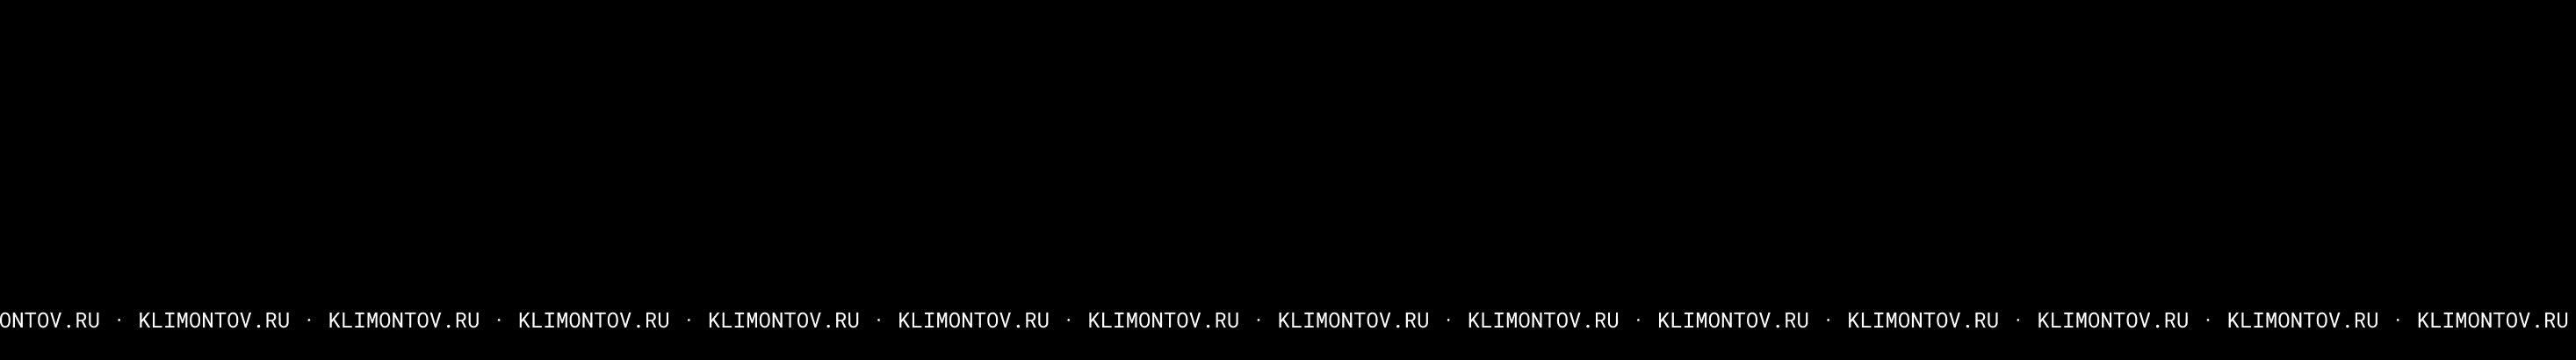 Денис Климонтов のプロファイルバナー